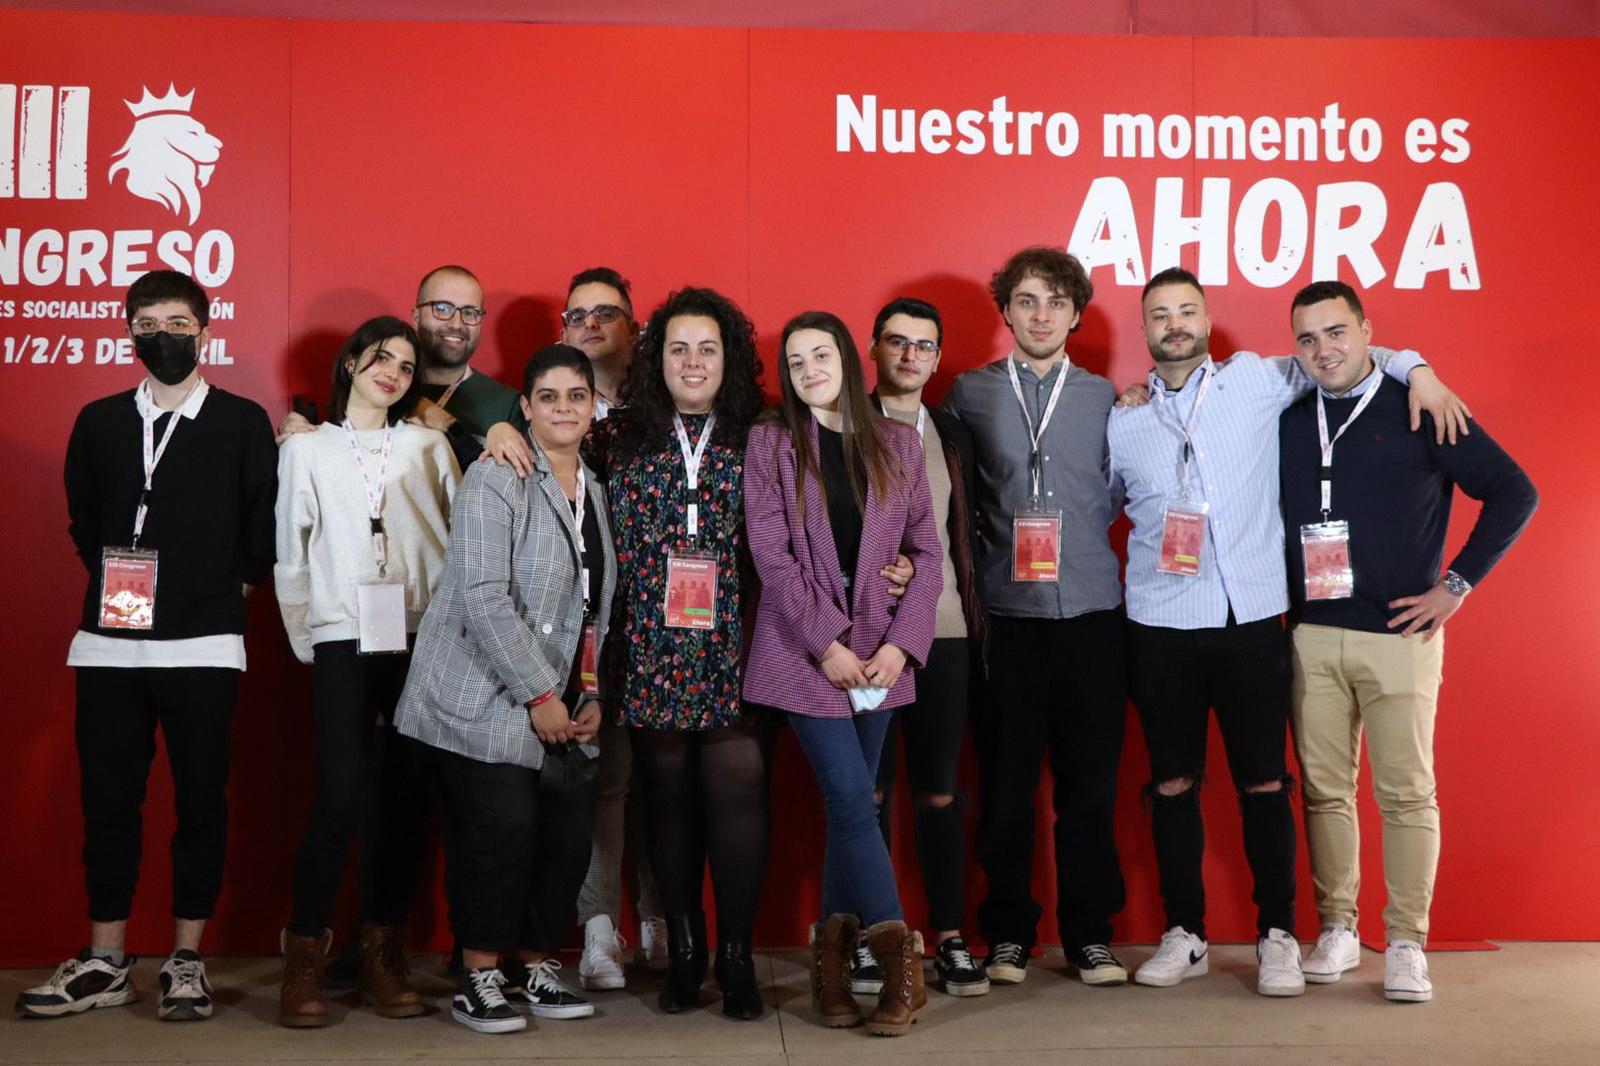 Juventudes Socialistas de León advierte de las cifras dramáticas sobre despoblación y reclama medidas urgentes